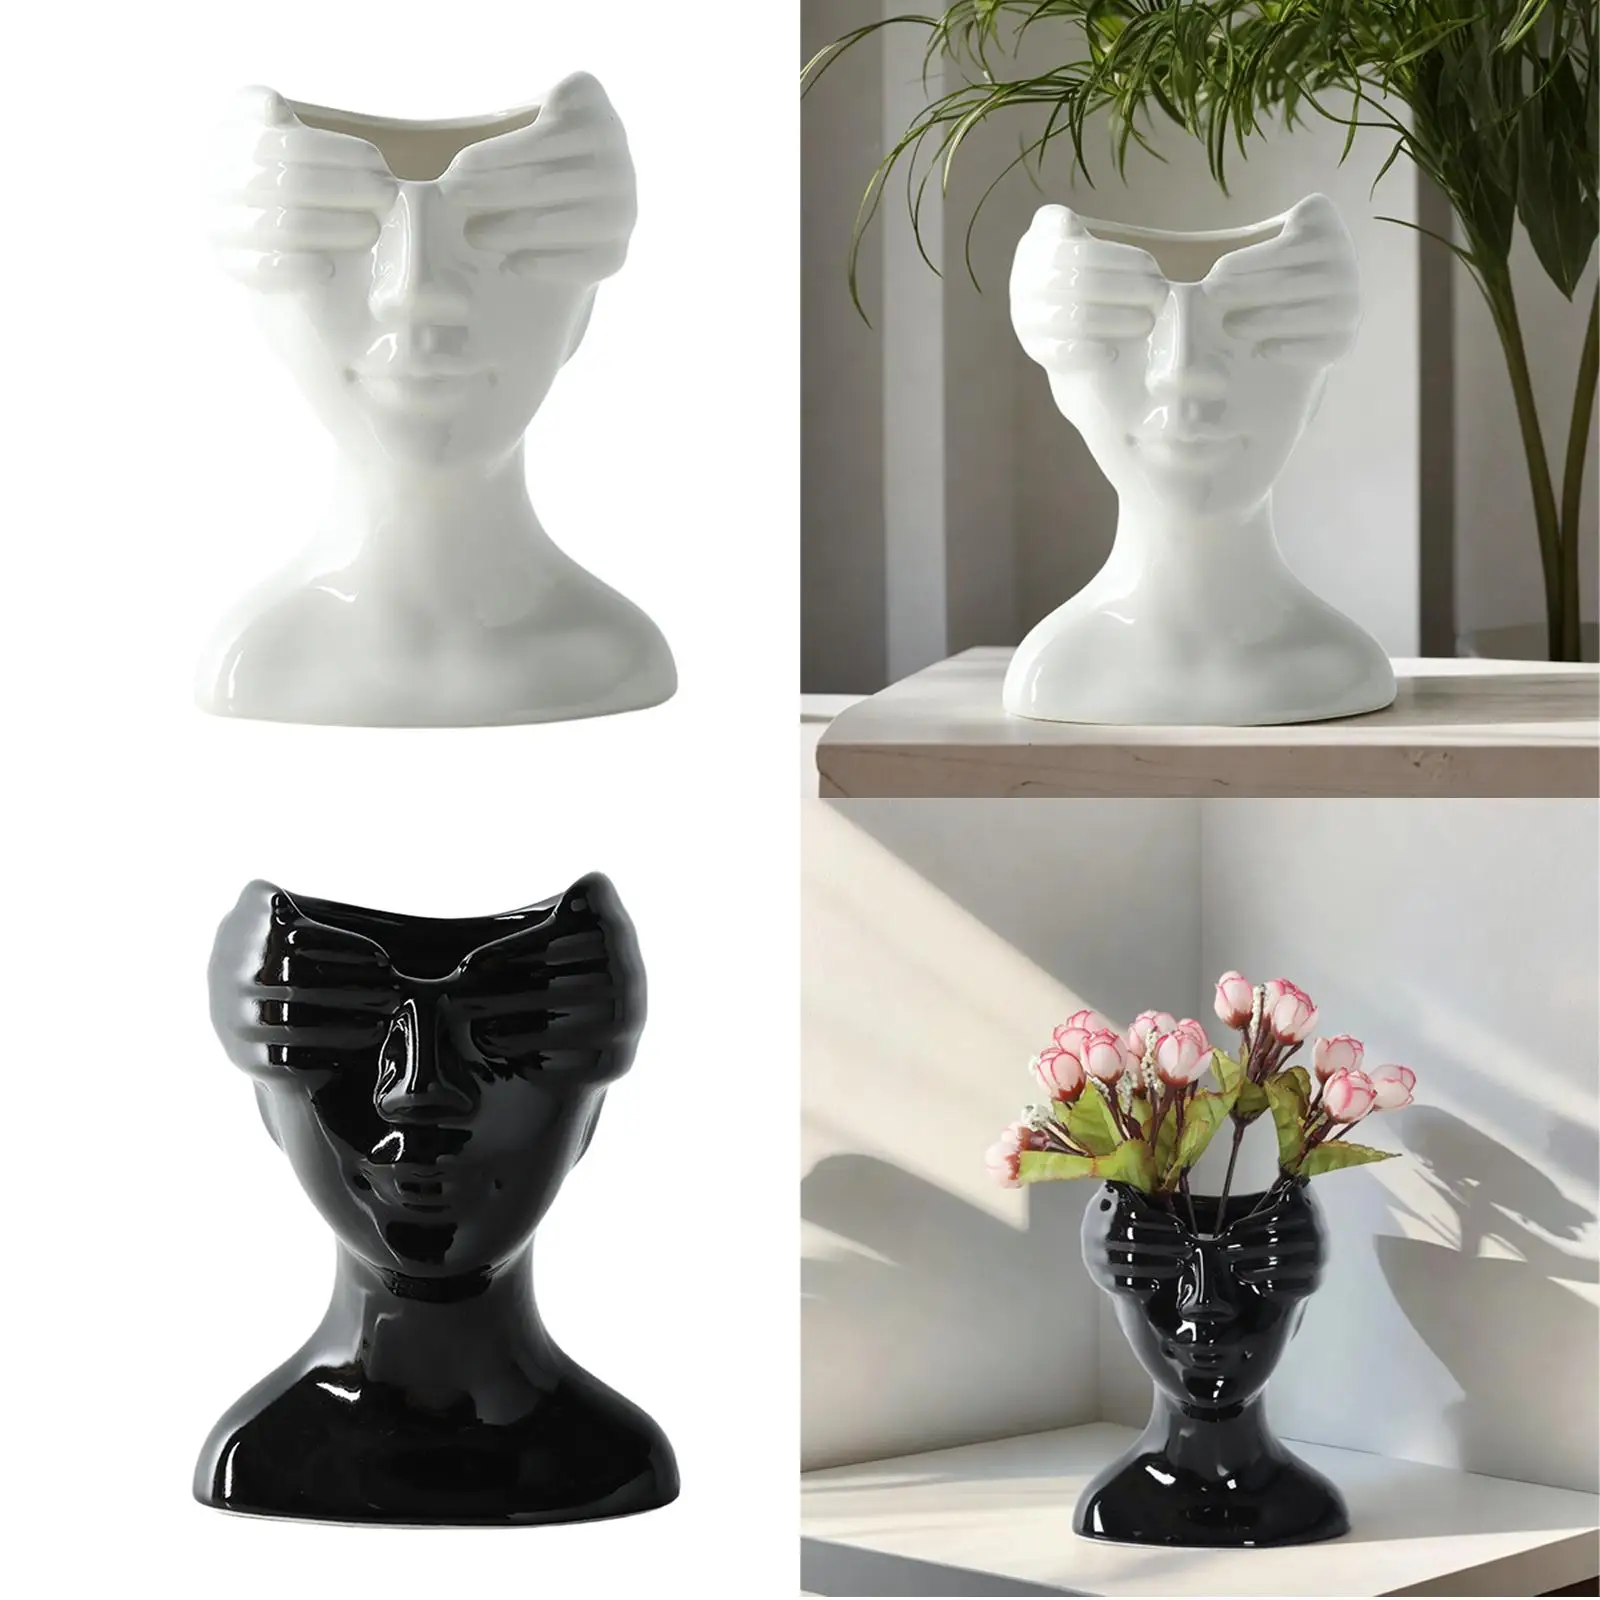 Ceramic Vase Modern Art Crafts Floral Arrangement Bud Vase Human Face Flower Vase for Cabinet Desk Living Room Birthday Wedding